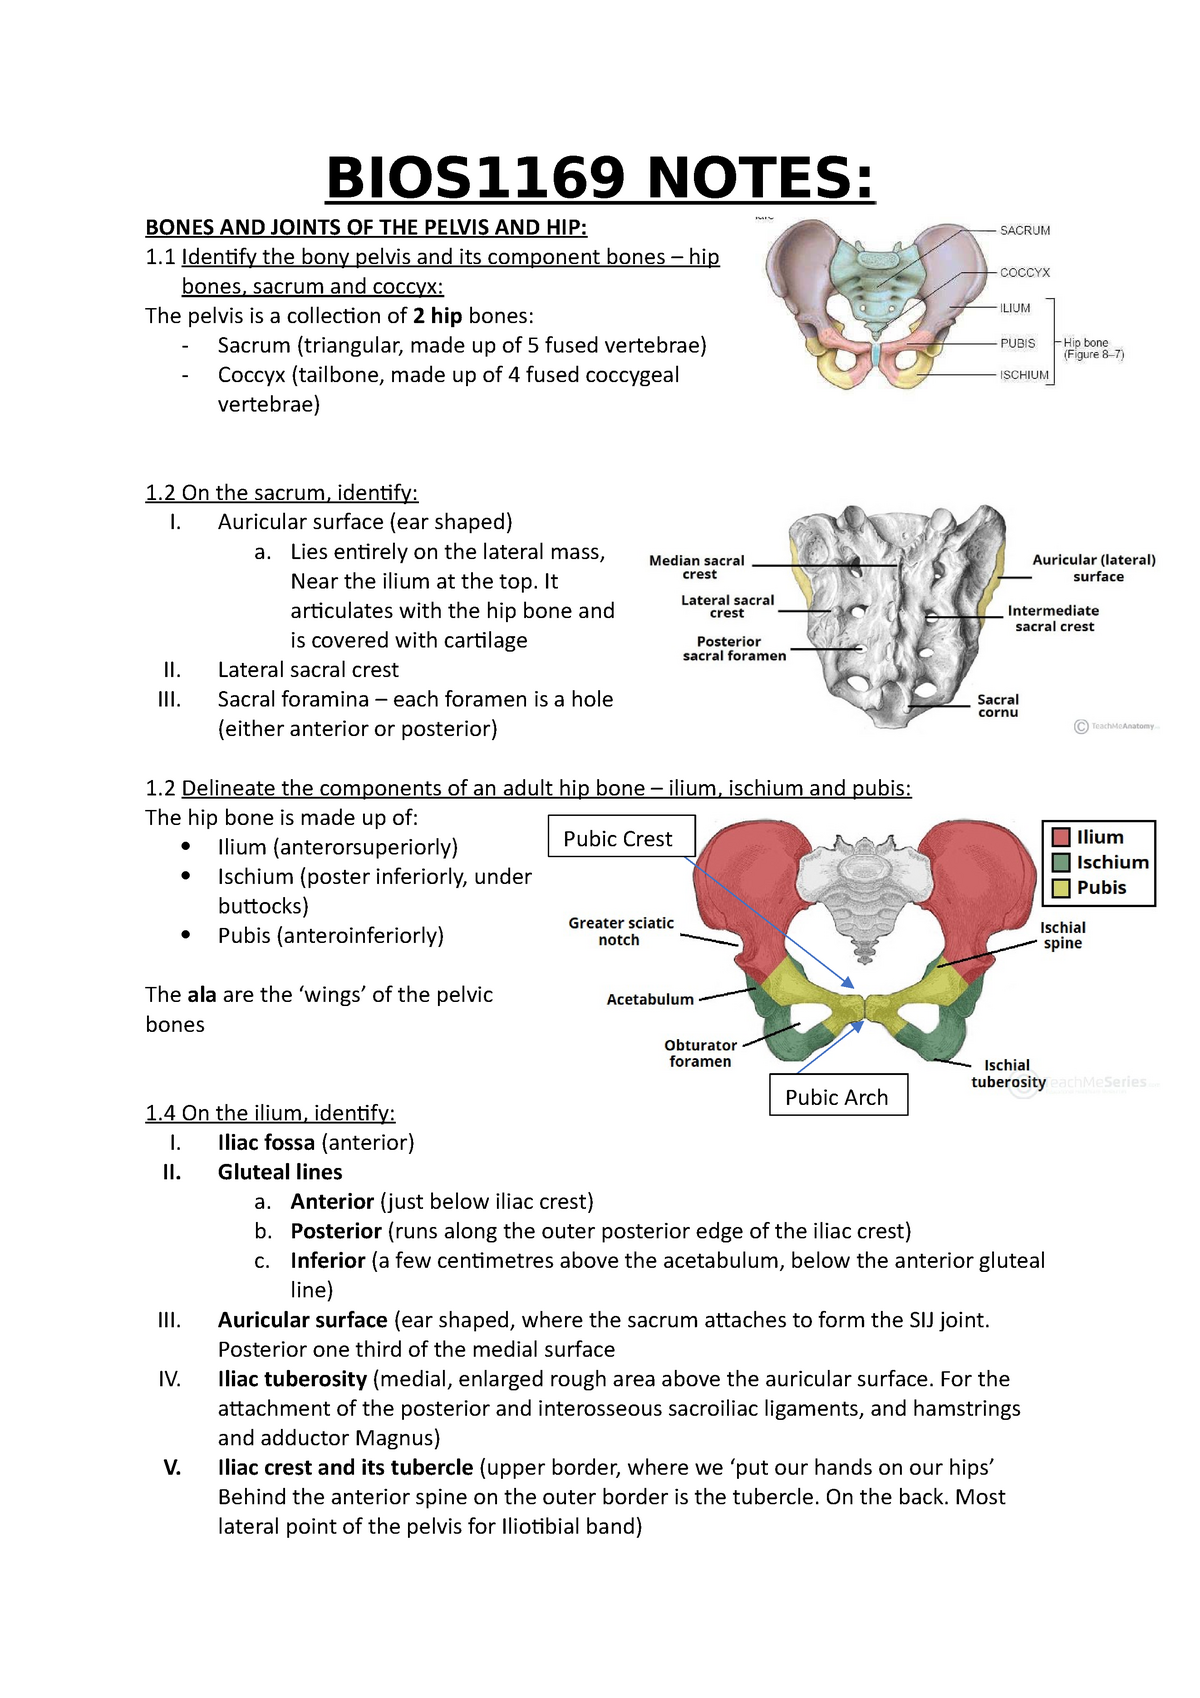 Hip bone - ilium, ischium and pubis